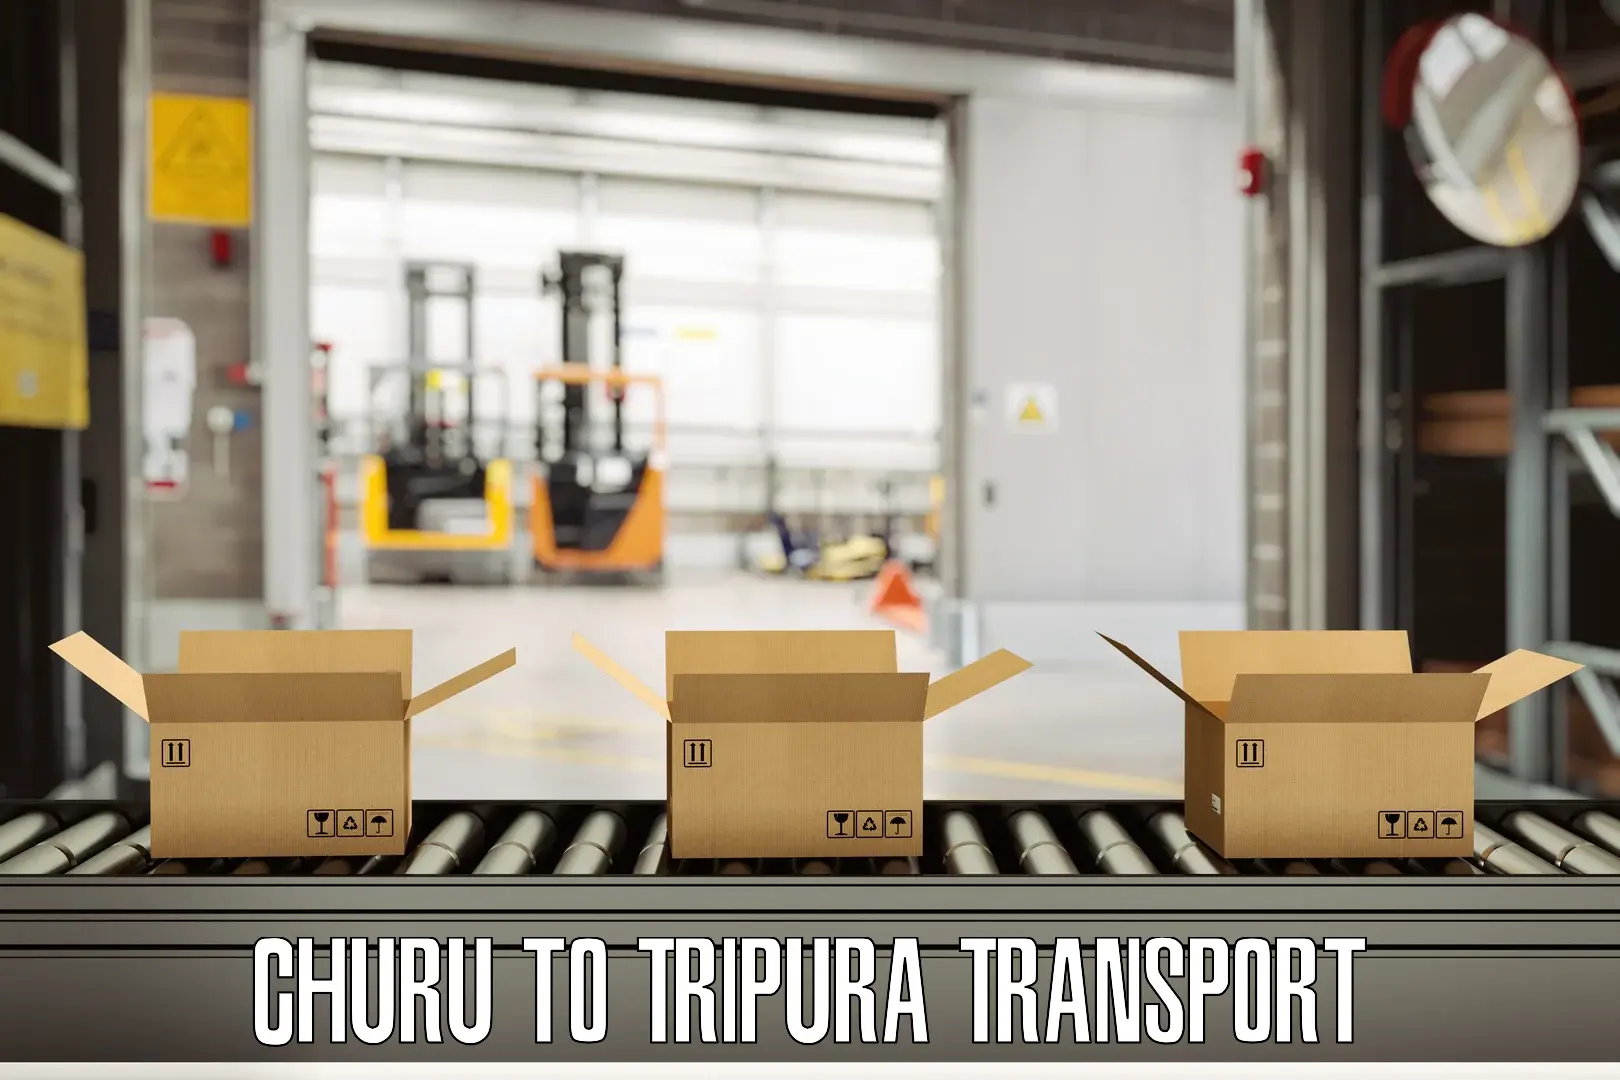 Intercity goods transport Churu to Bishalgarh